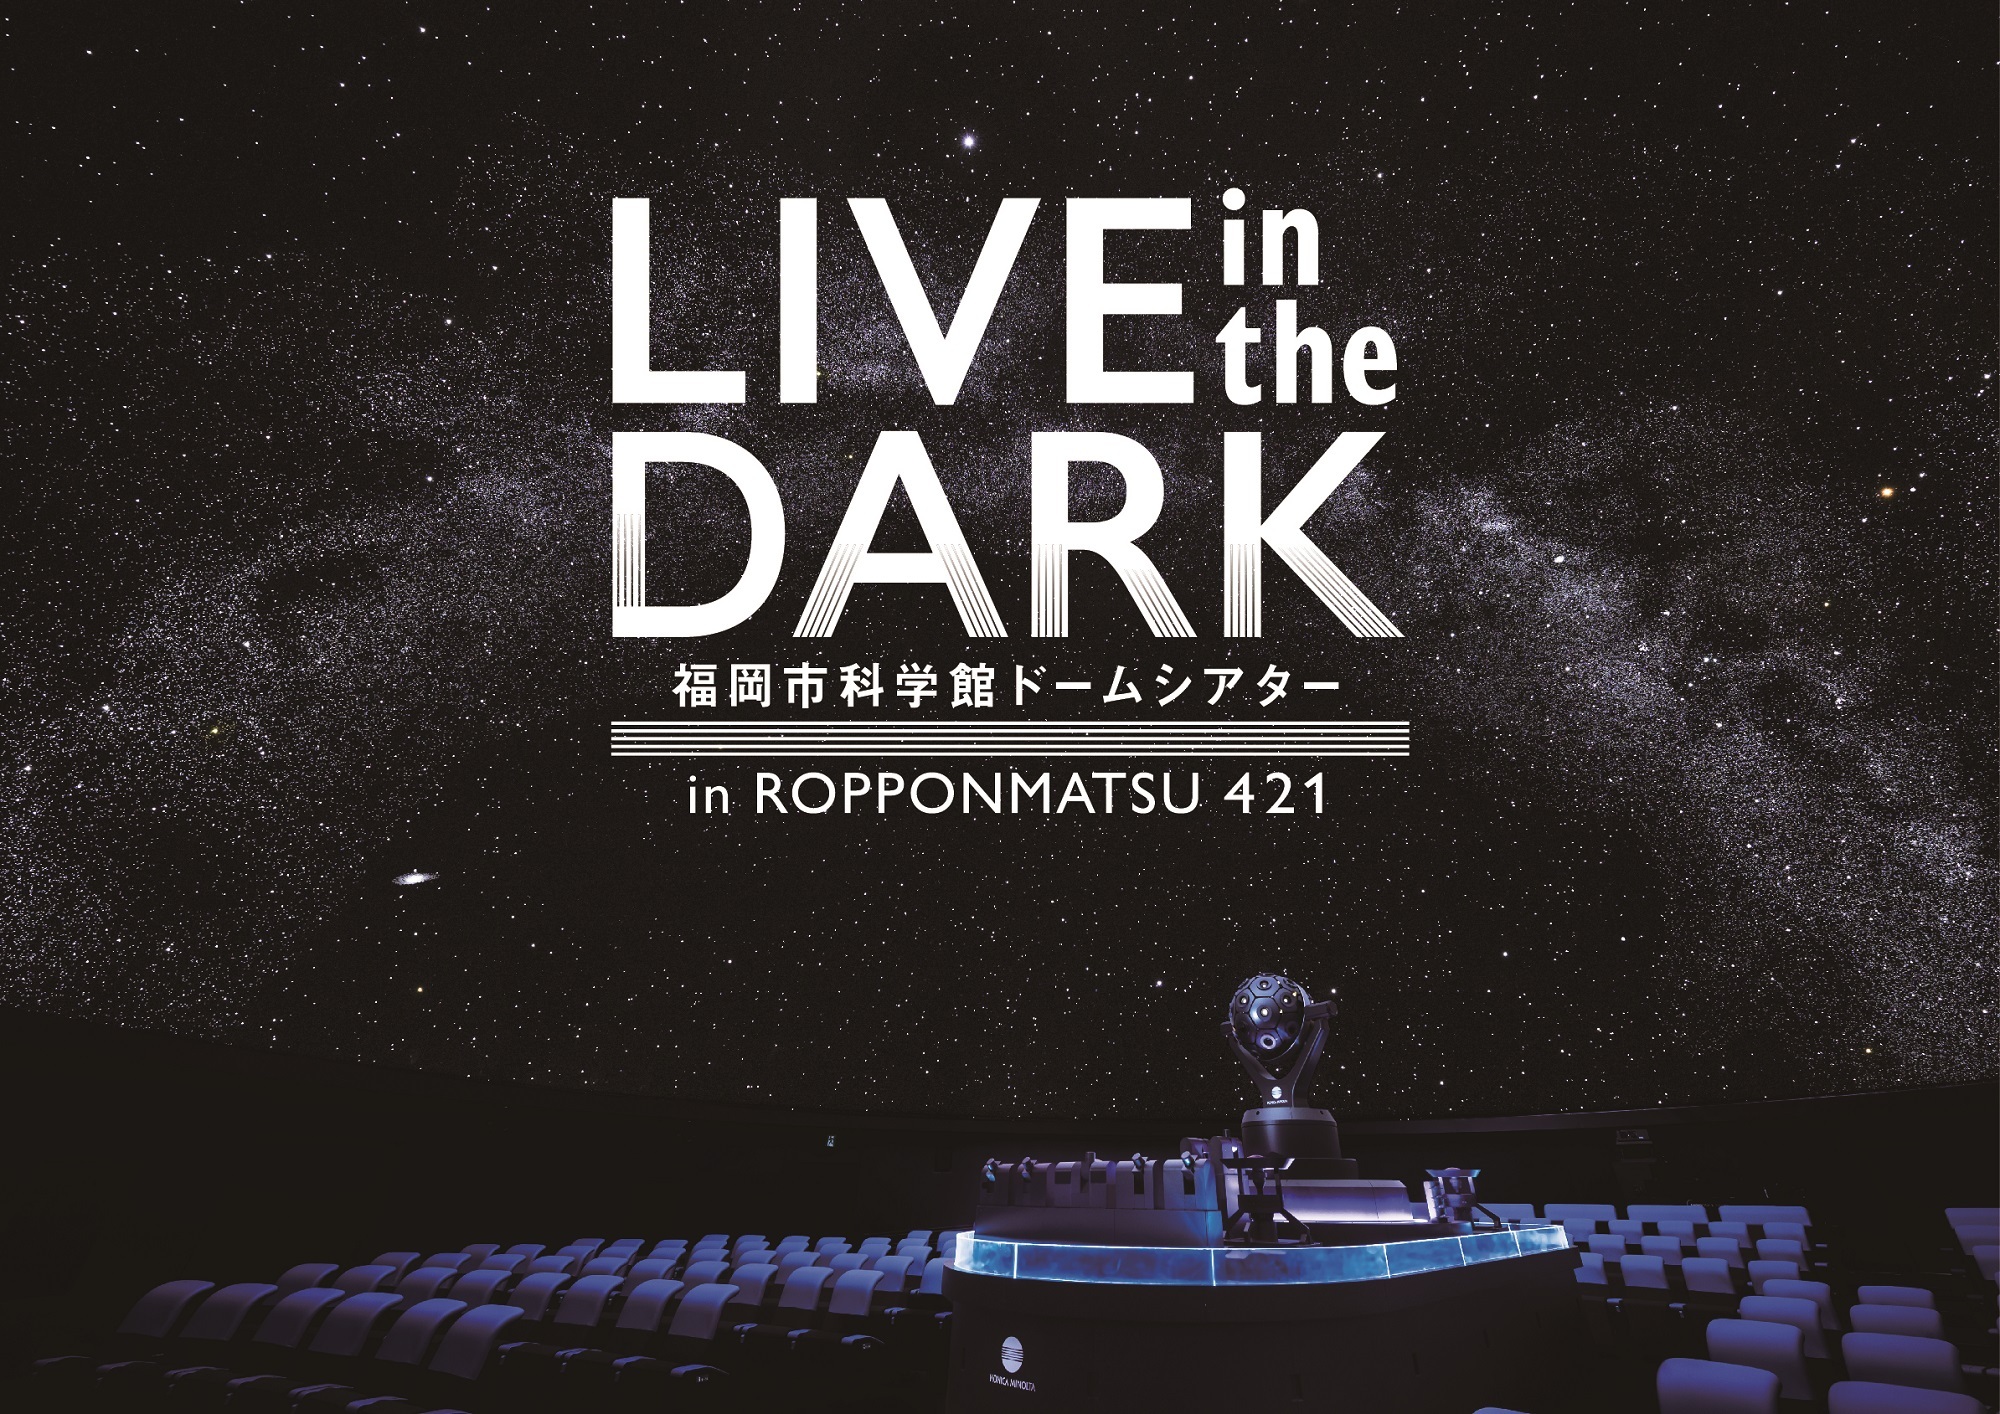 Moumoonを迎え 東京 福岡でプラネタリウムライブを開催 Live In The Dark Tour W Moumoon コニカミノルタプラネタリウム株式会社のプレスリリース